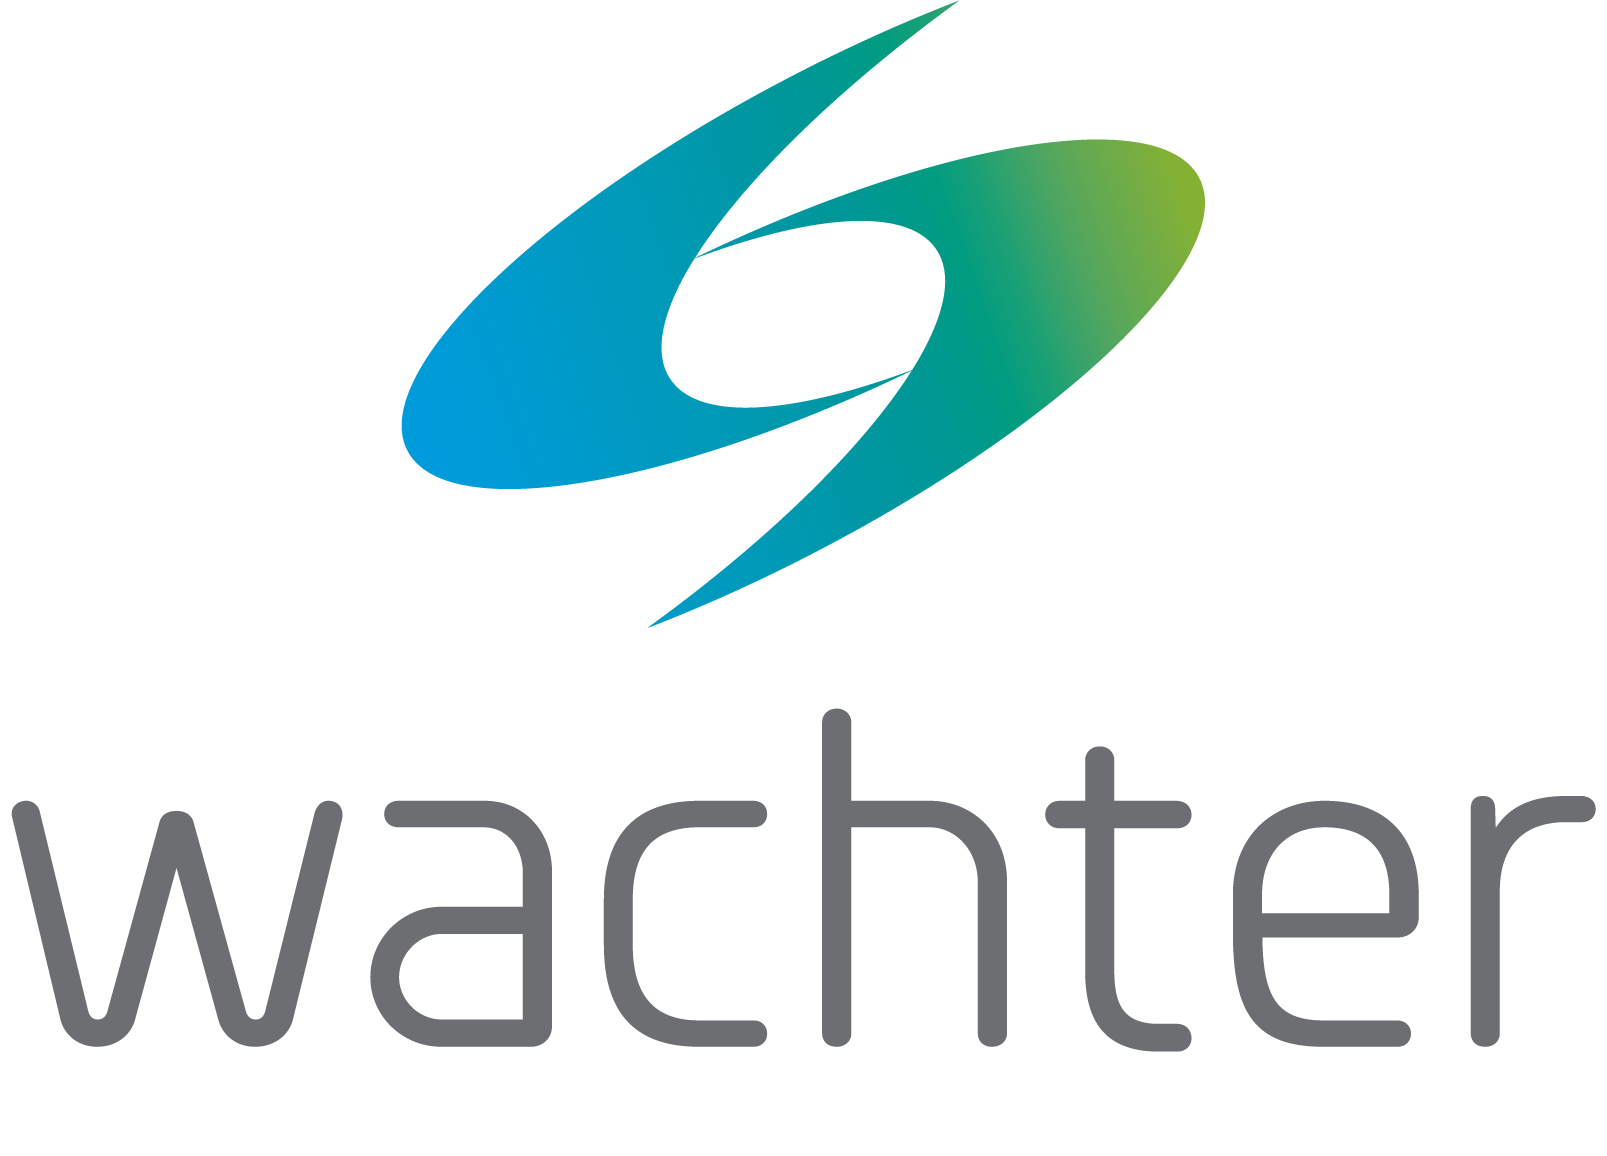 Wachter logo